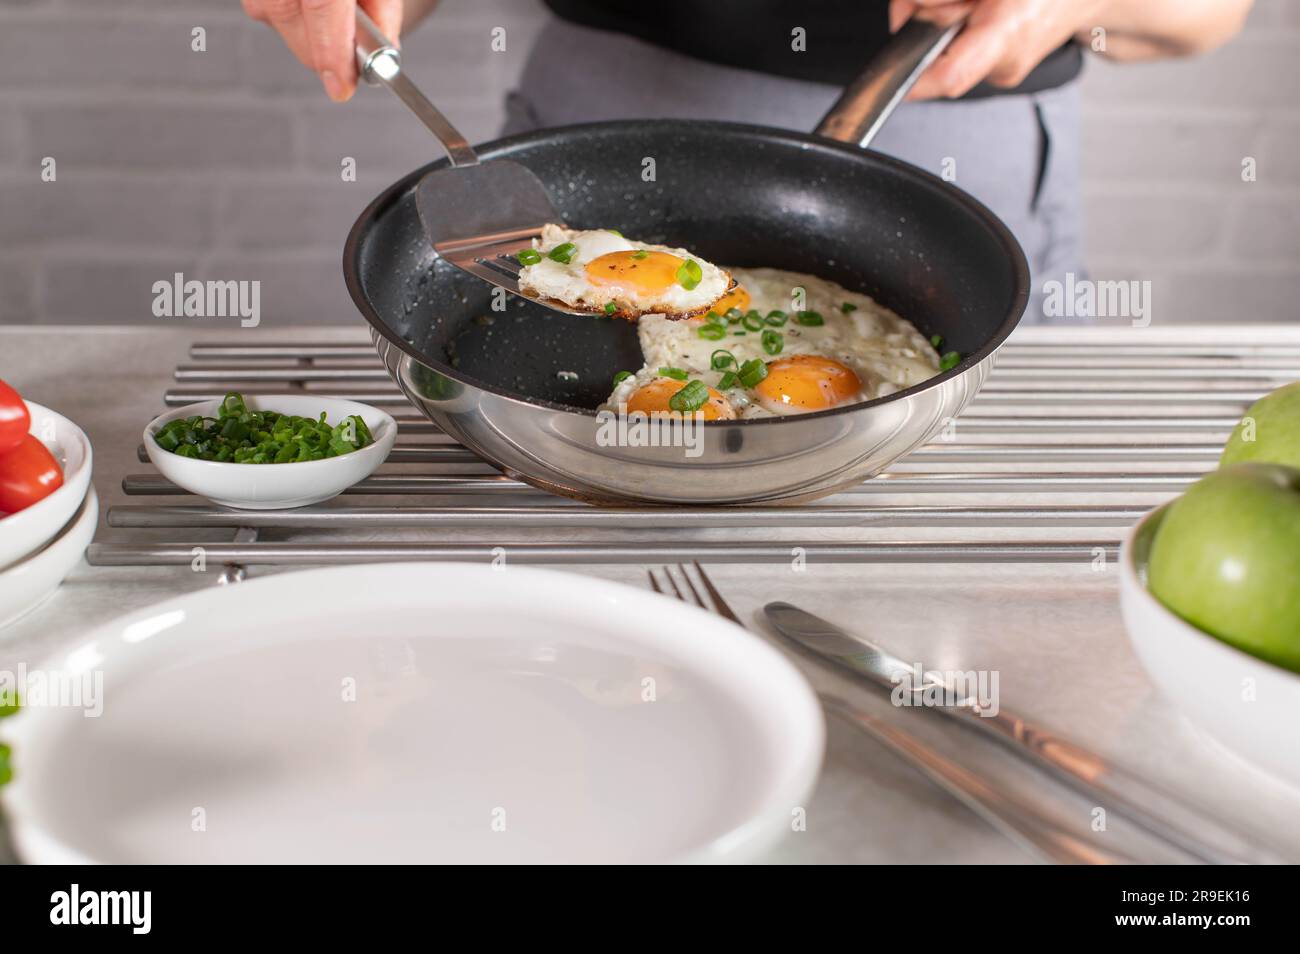 Eine Frau mit Schürze serviert frisch gebratenes Ei in der Pfanne mit einem Teigschaber auf einem Teller Stockfoto